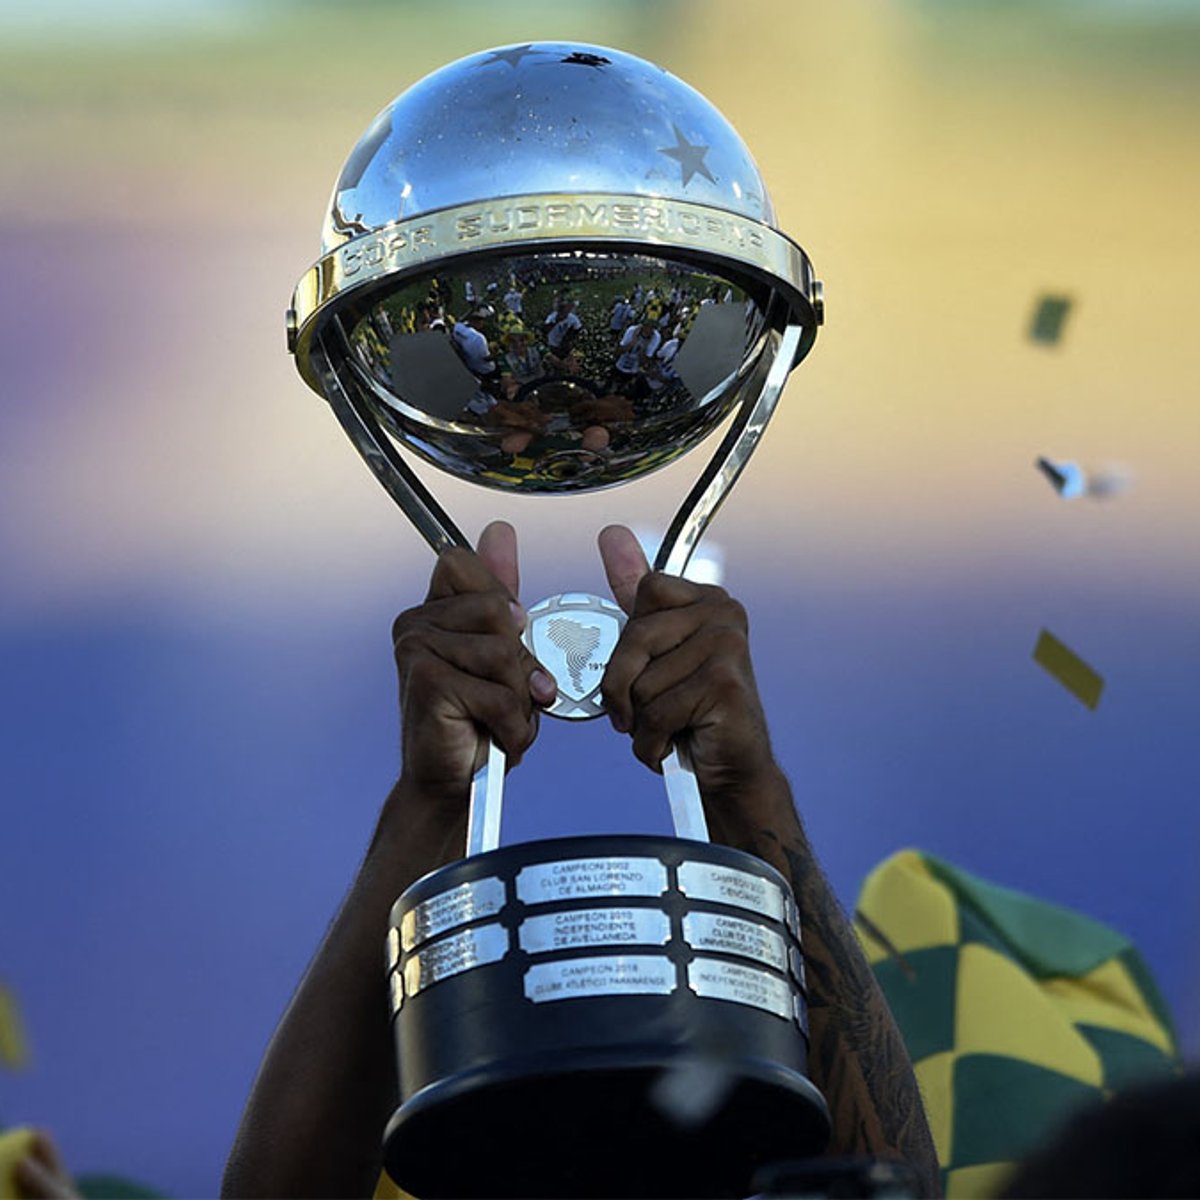 Conmebol define datas e horários dos confrontos das oitavas de final da Copa  Sul-Americana, copa sul-americana